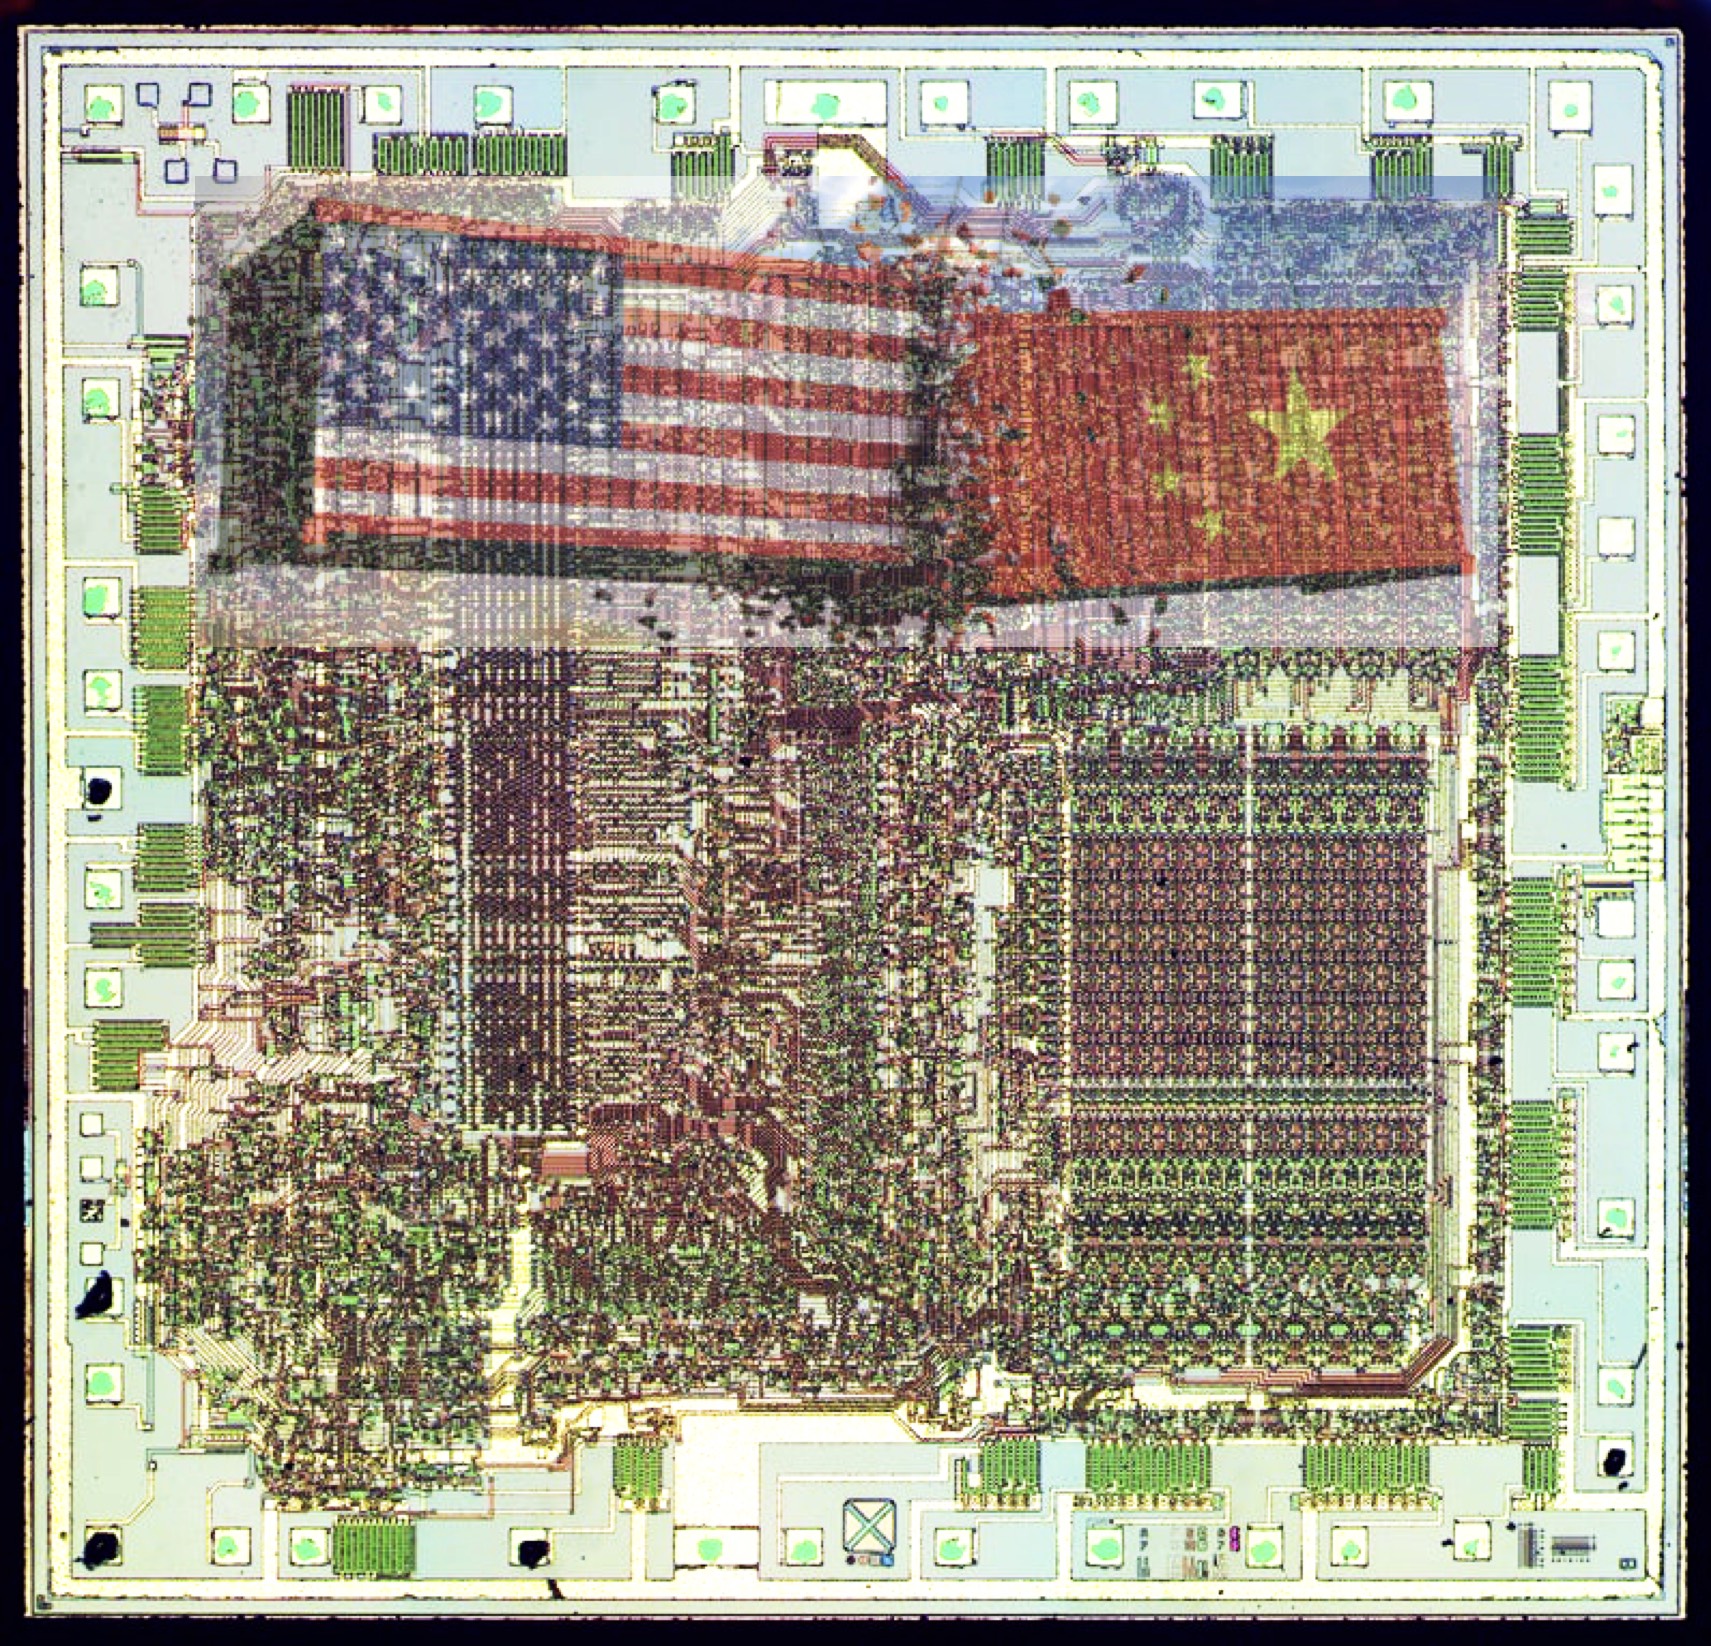 Tất tật về phần mềm thiết kế chip EDA, mặt trận mới trong cuộc đối đầu công nghệ Mỹ-Trung - Ảnh 3.